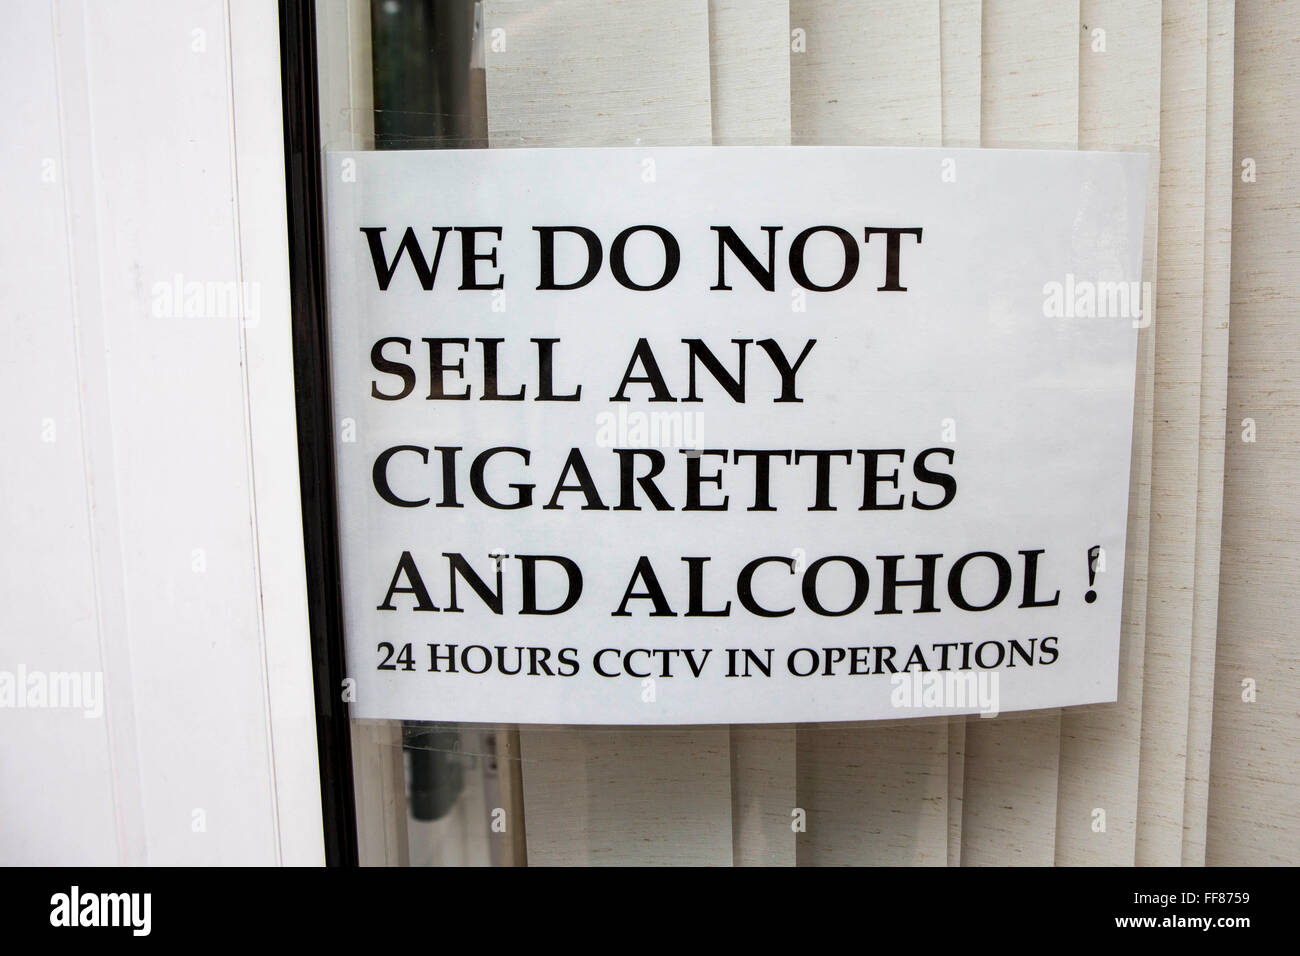 Cartello finestra indicante: non vendiamo le sigarette e alcool! 24 ore CCTV in funzionamento". Questo è un segno di avvertimento per mettere il potenziale rottura ins. Londra, Regno Unito. Foto Stock